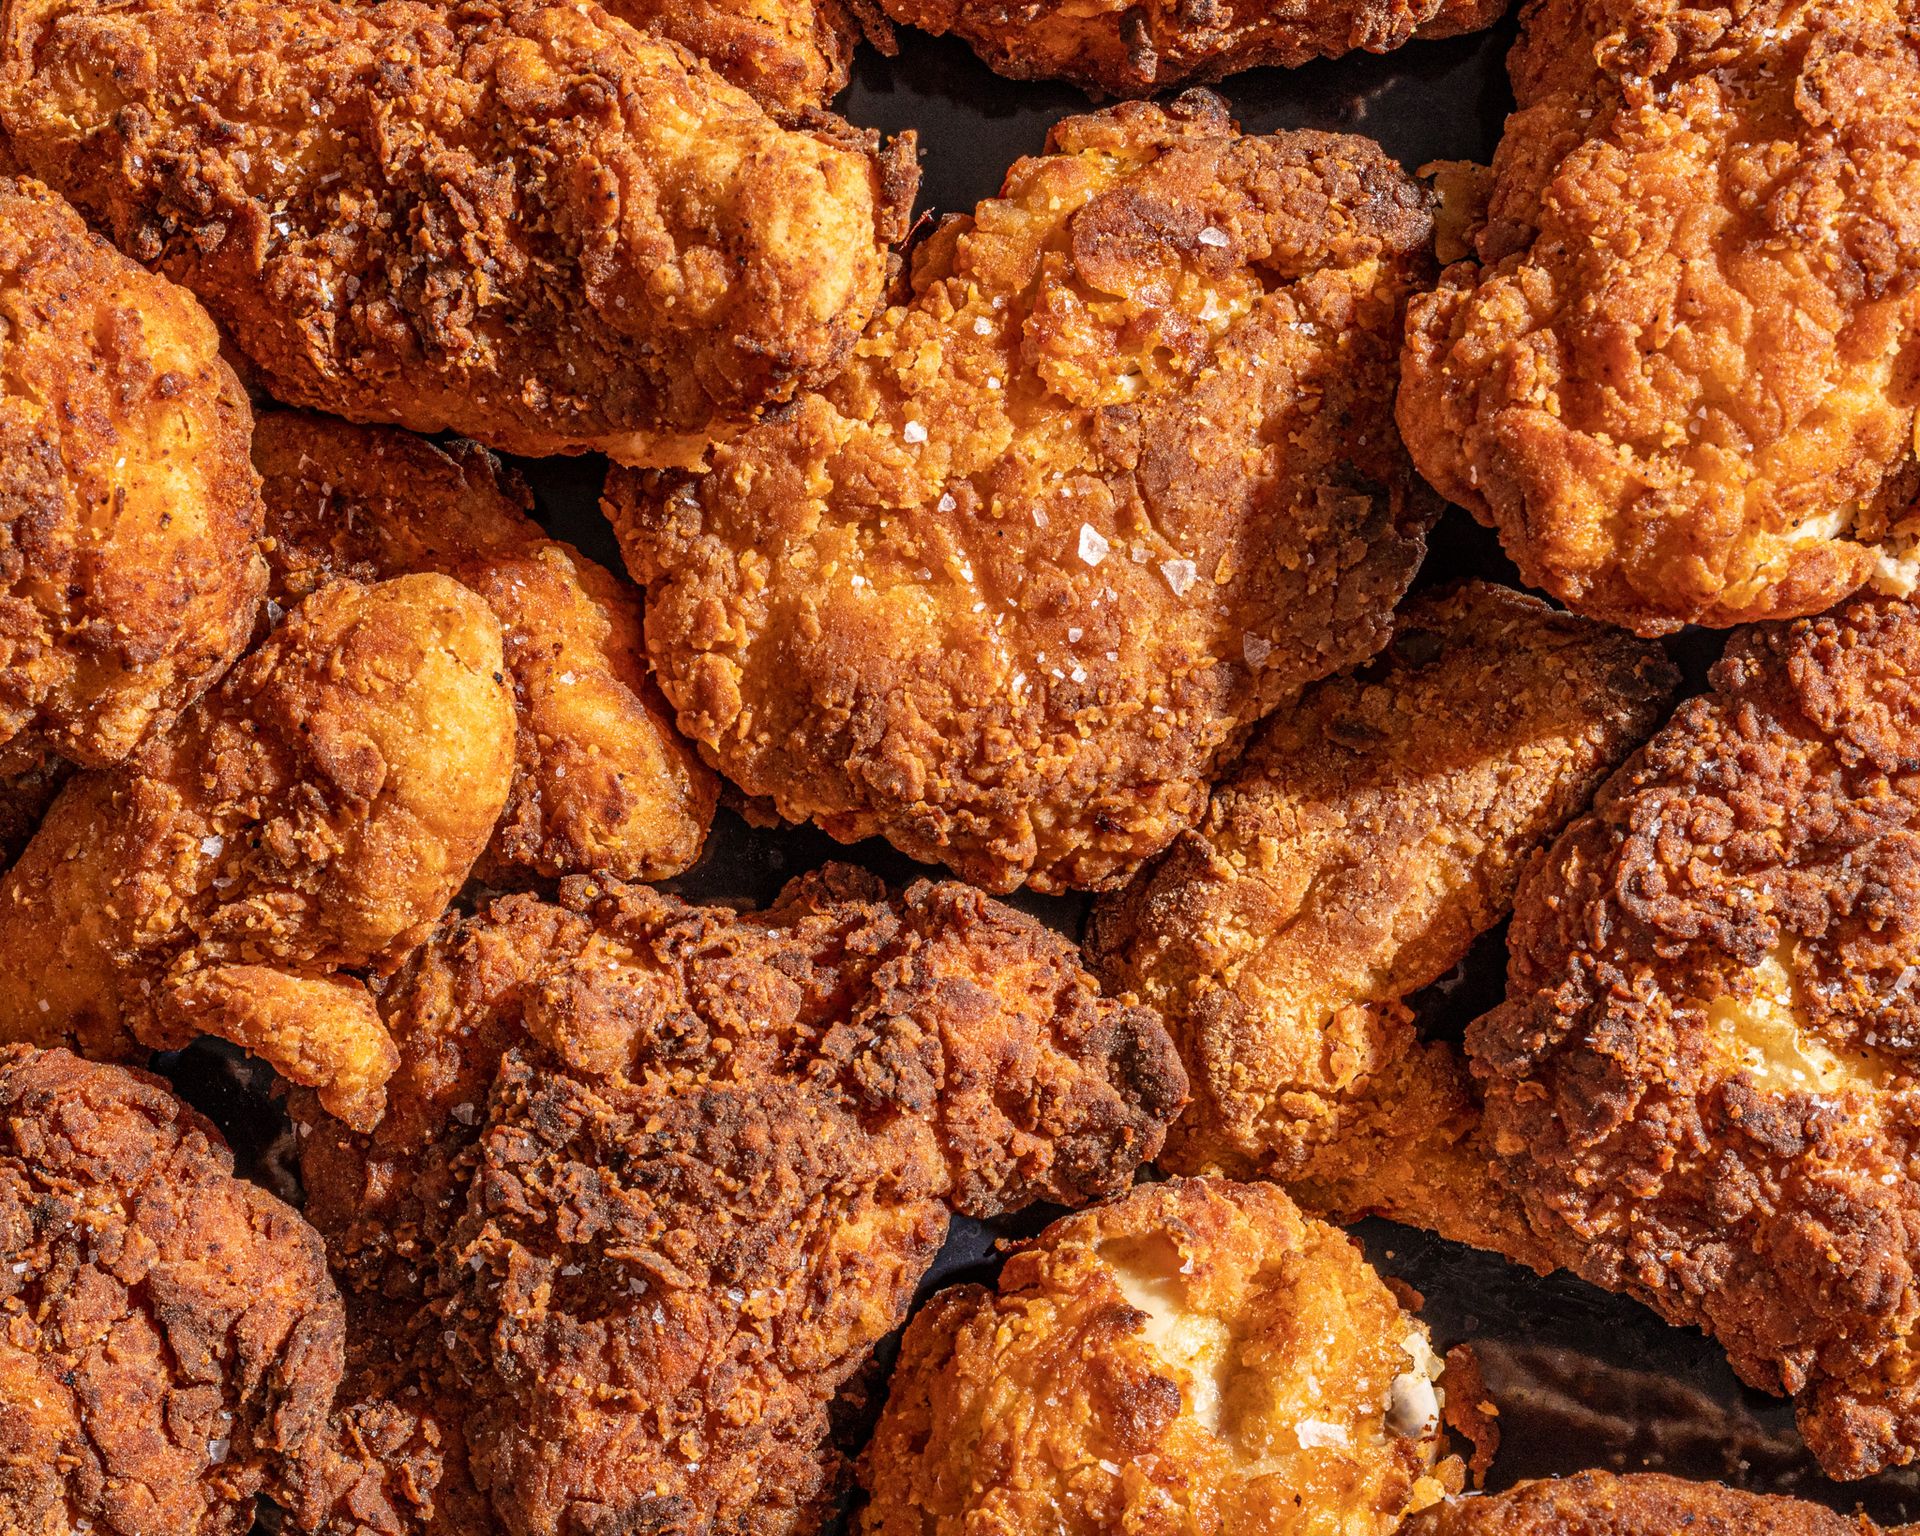 Fried Chicken: Besser frittiert in Öl oder aus der Heißluftfritteuse?